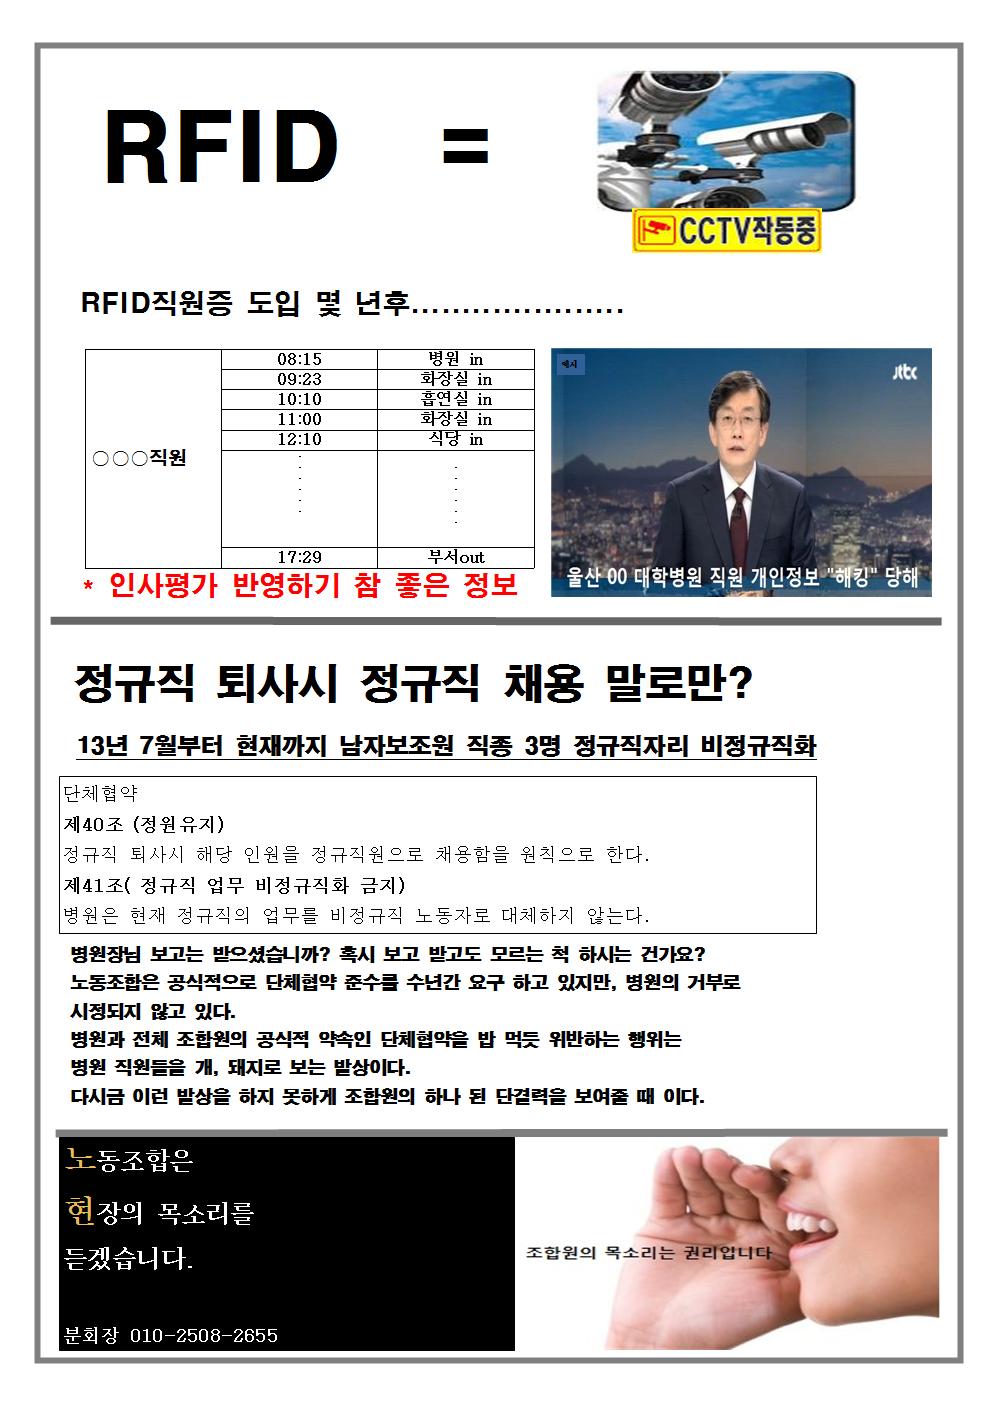 울산대병원분회 2017 투쟁속보 4호002.jpg